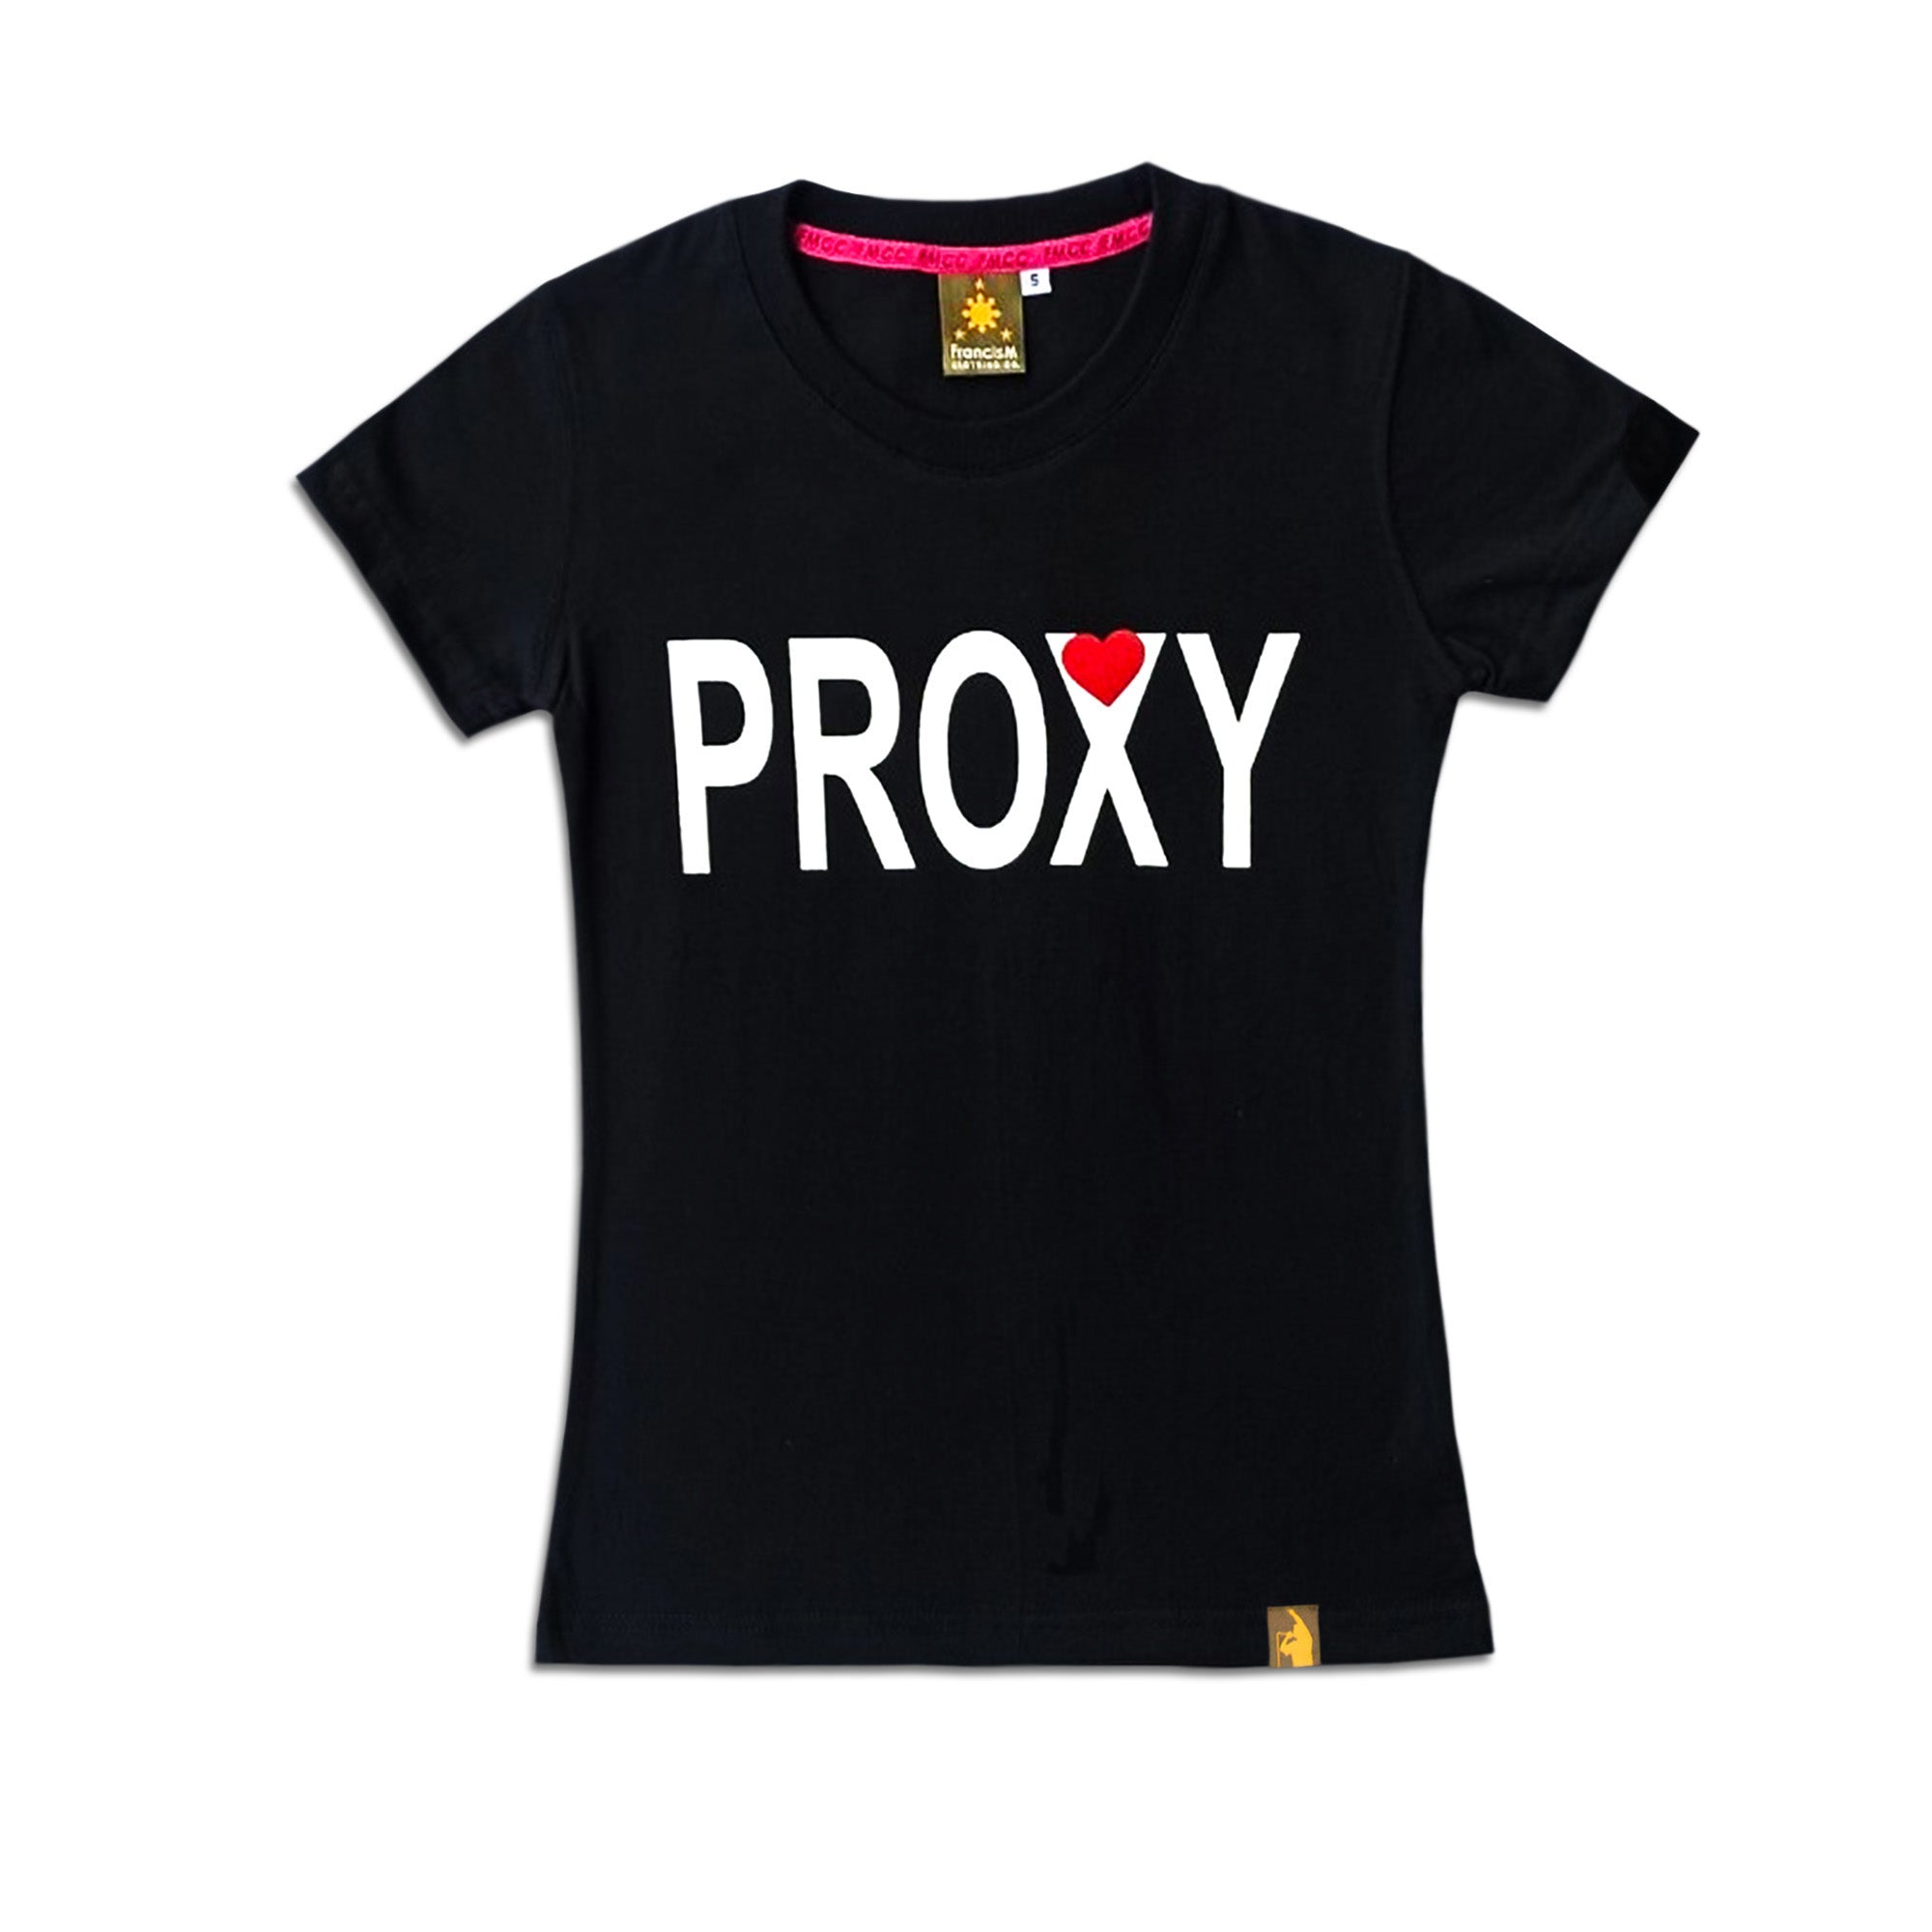 高額売筋 p ROXY ストリングシャツ